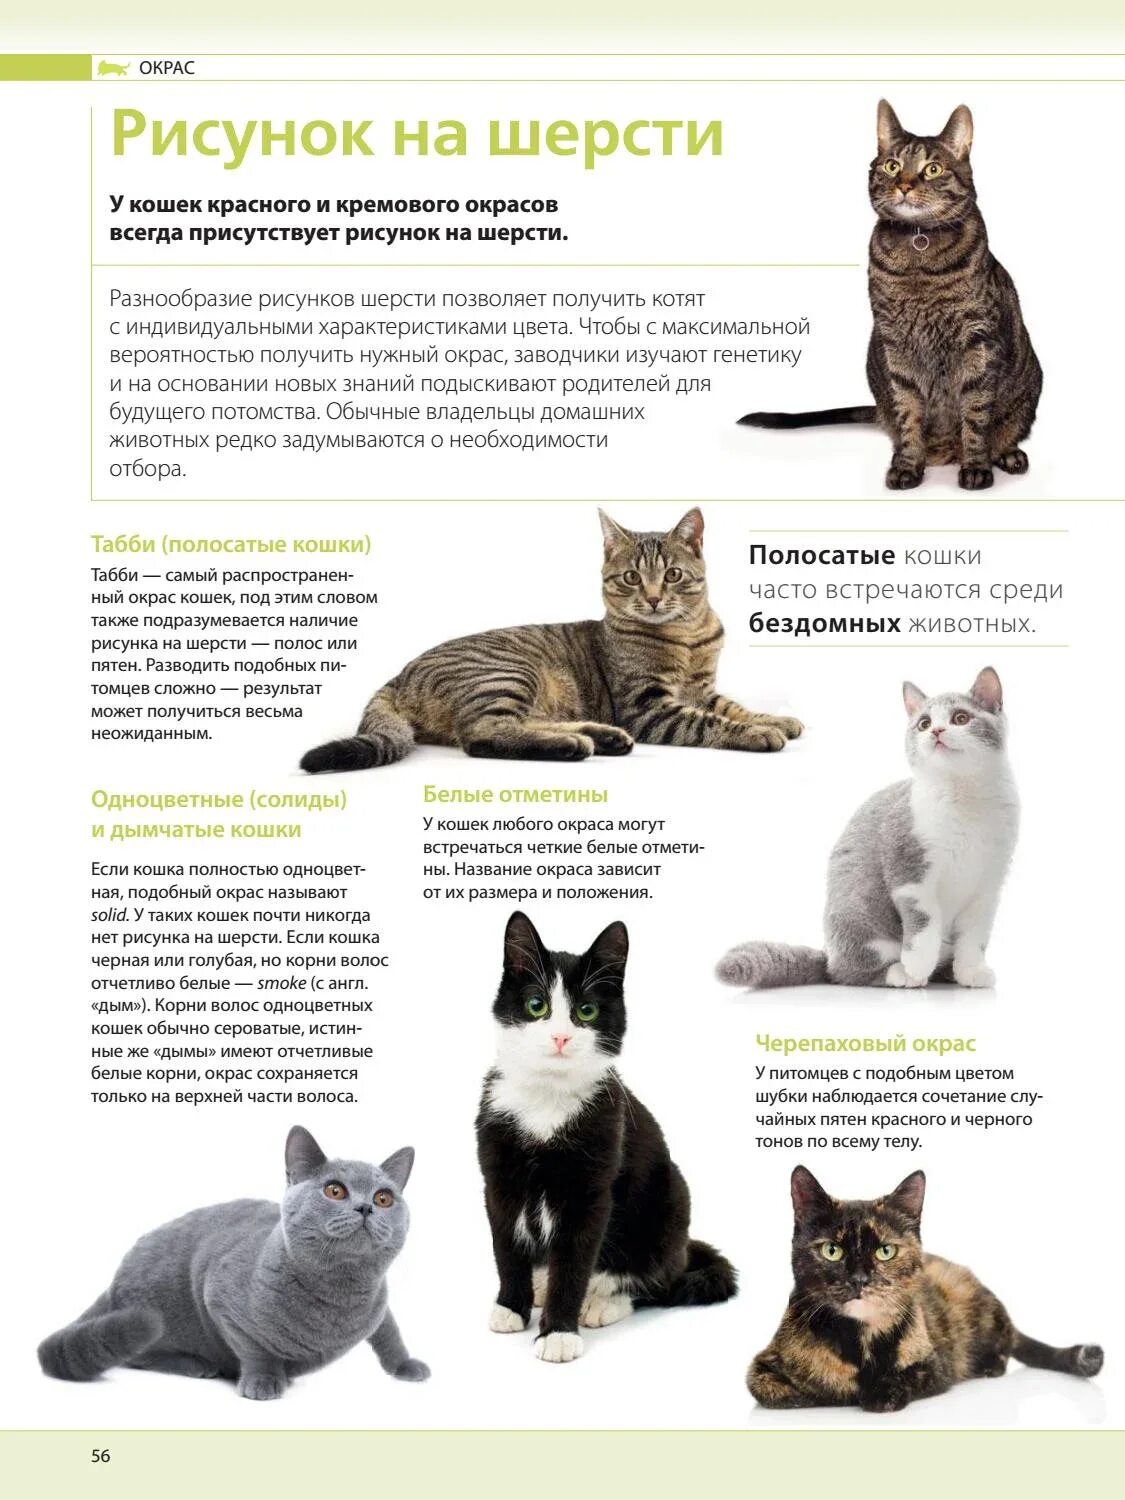 Список пород кошек. Породы кошек с описанием. Породы кошек с фотографиями и названиями. Распространенные породы кошек.